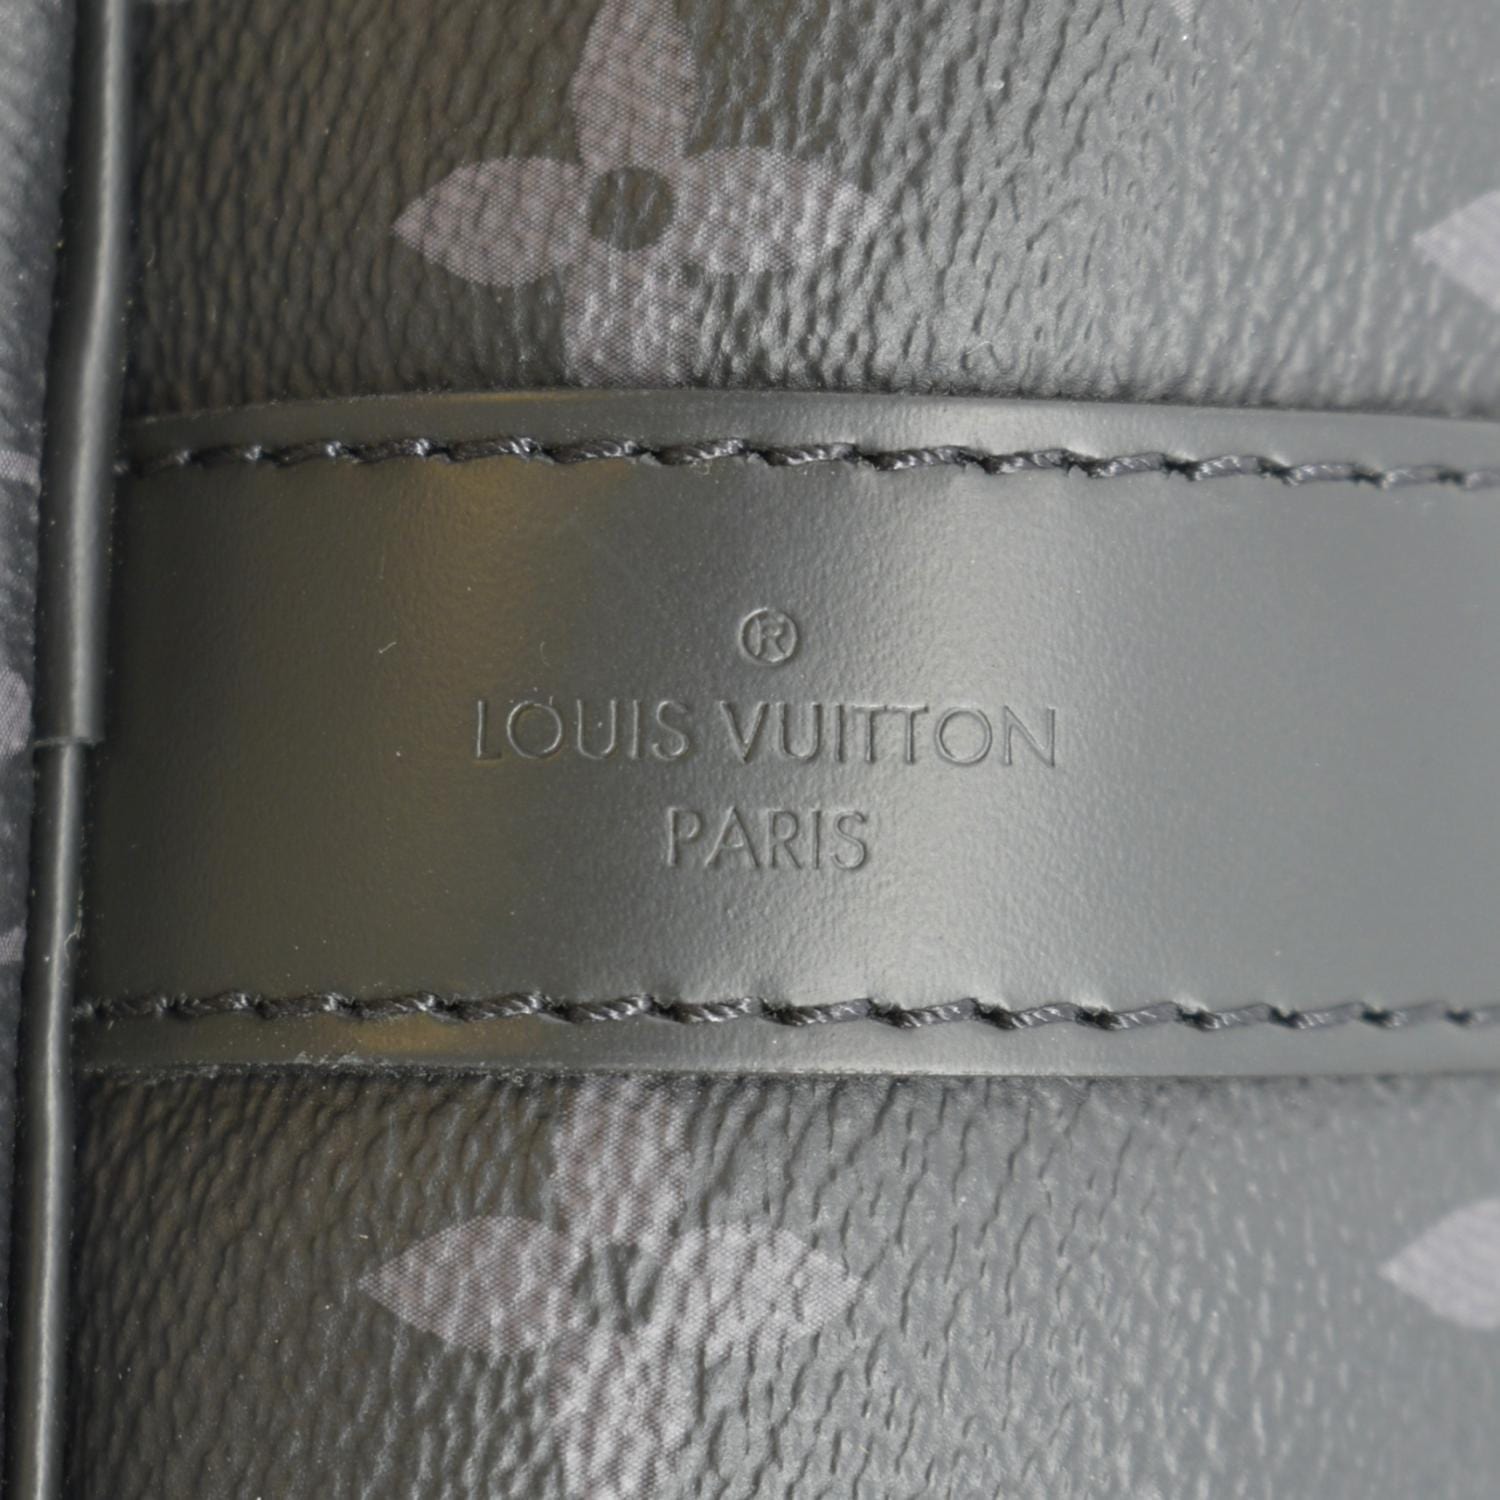 Louis Vuitton Keepall Bandouliere Bag Monogram Eclipse Canvas 55 Black  2354456